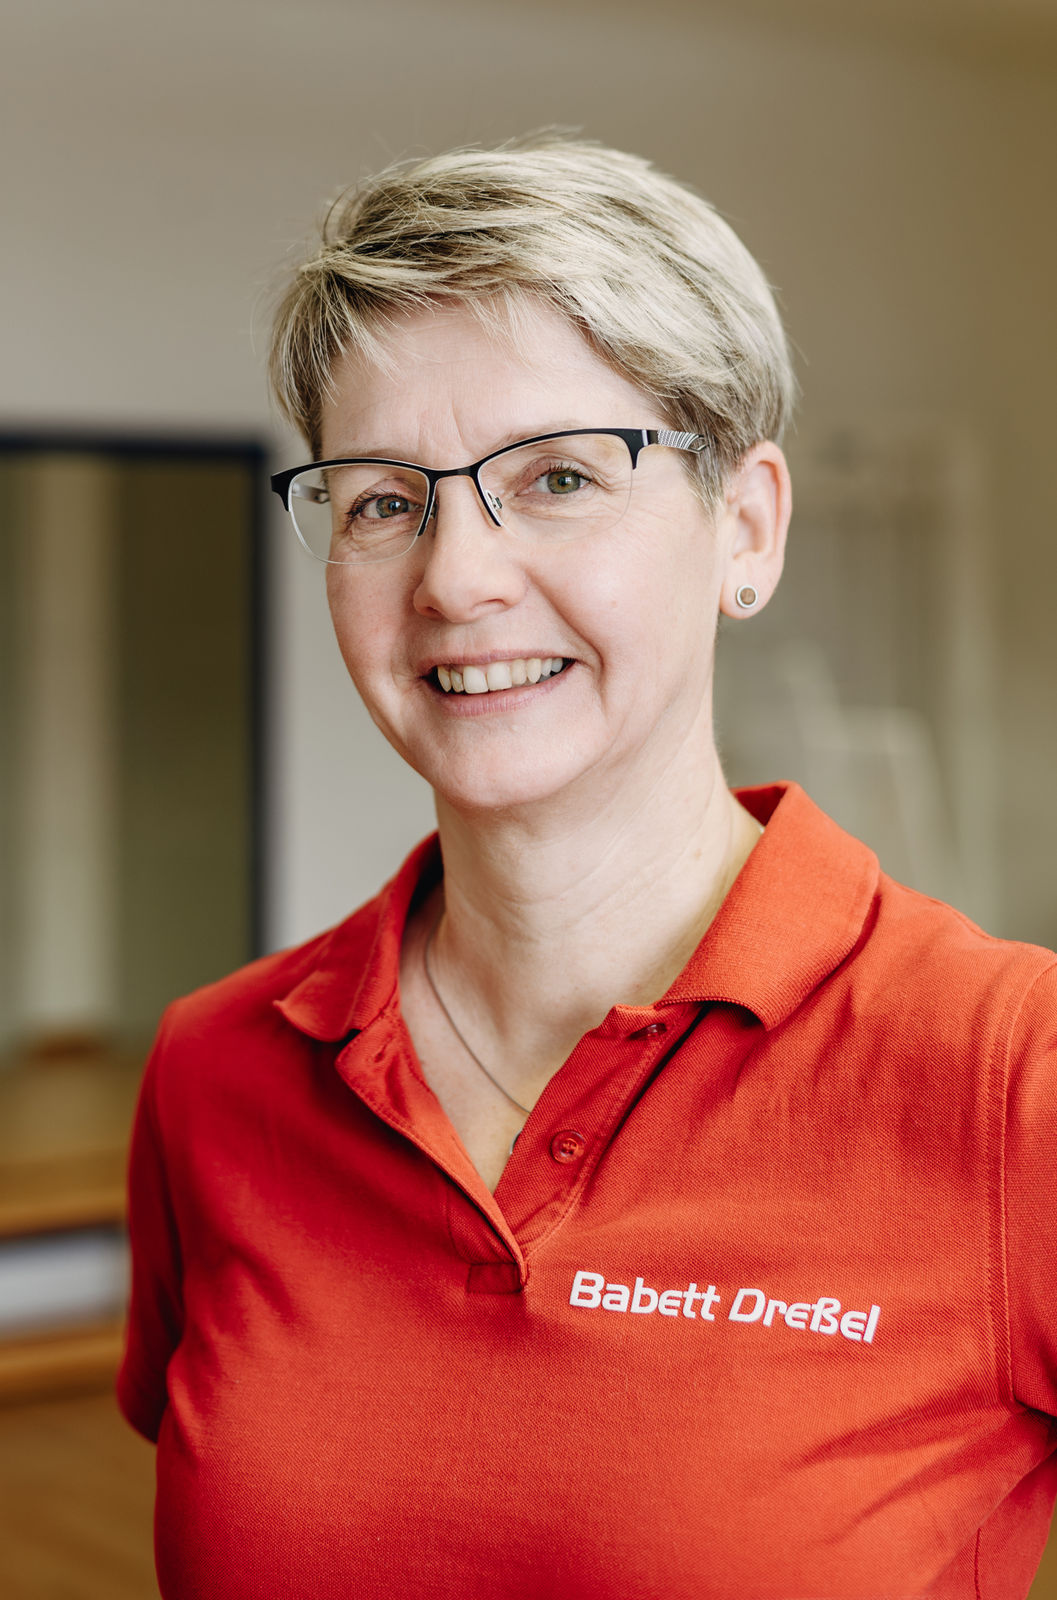 Babett Dreßel - Physiotherapeutin